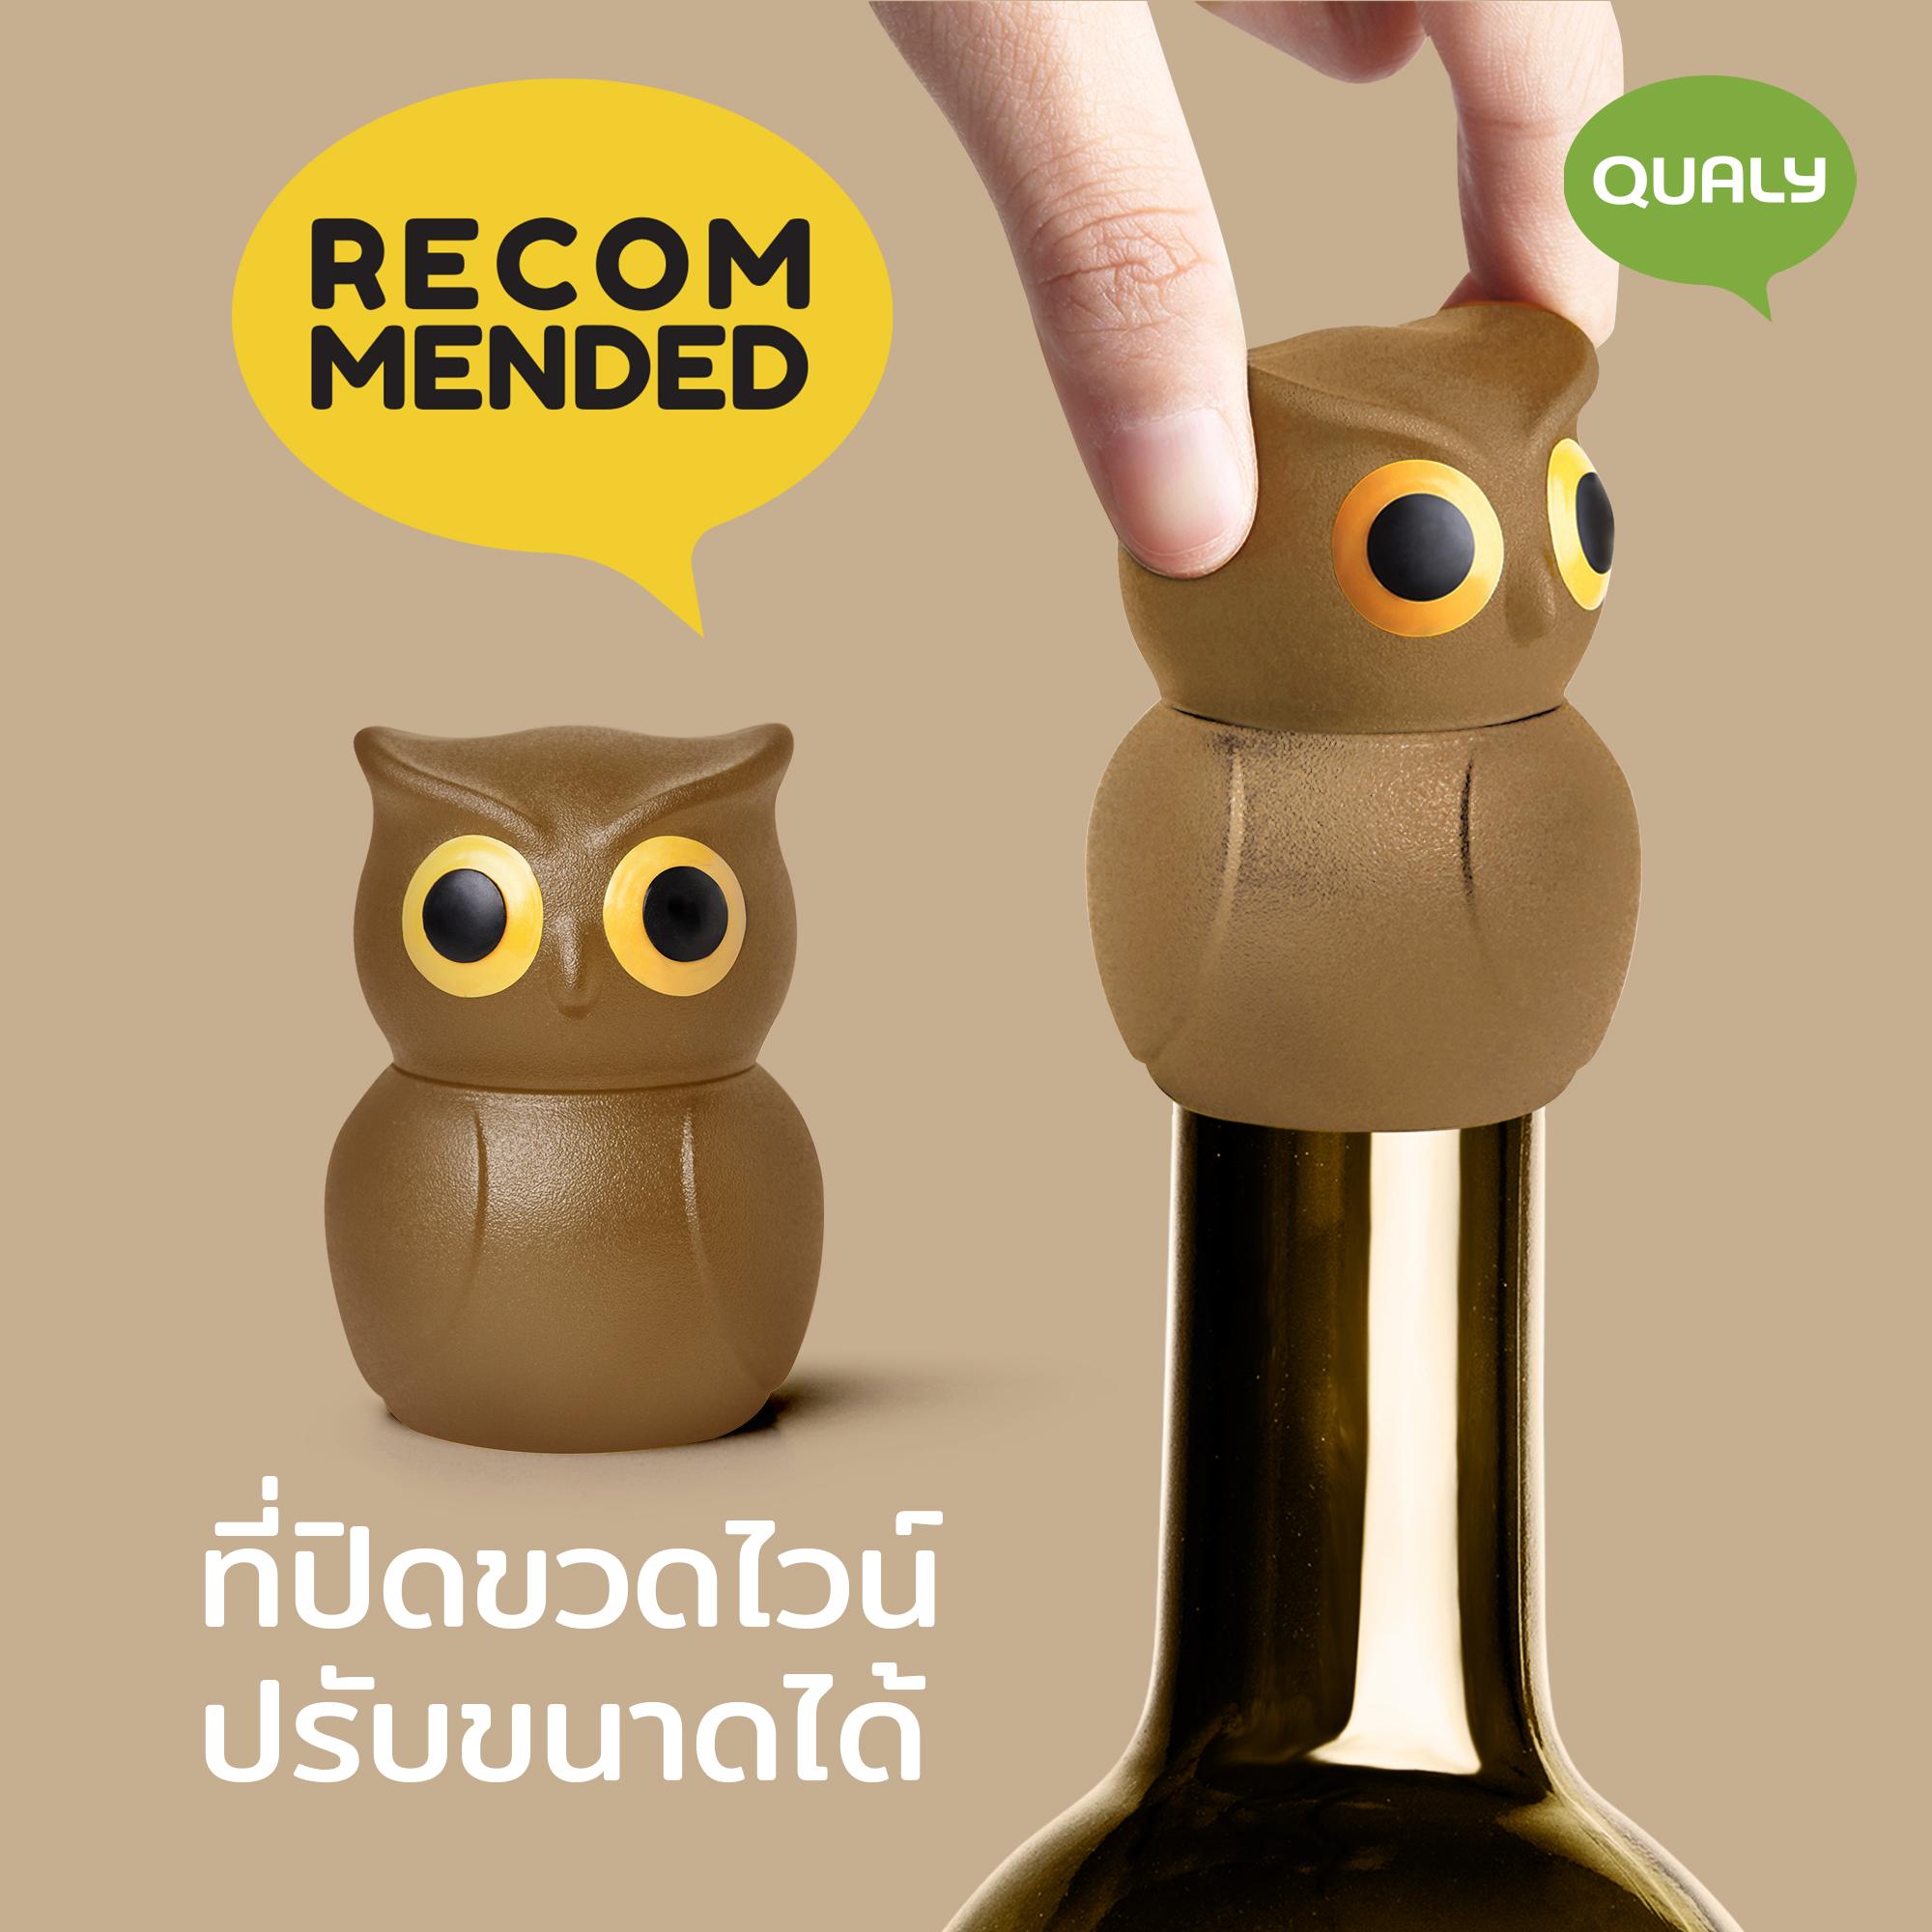 ที่ปิดขวด ที่ปิดขวดไวน์ ปรับขนาดได้ รูปนกฮูก - Qualy Owl Stopper - Bottle stopper